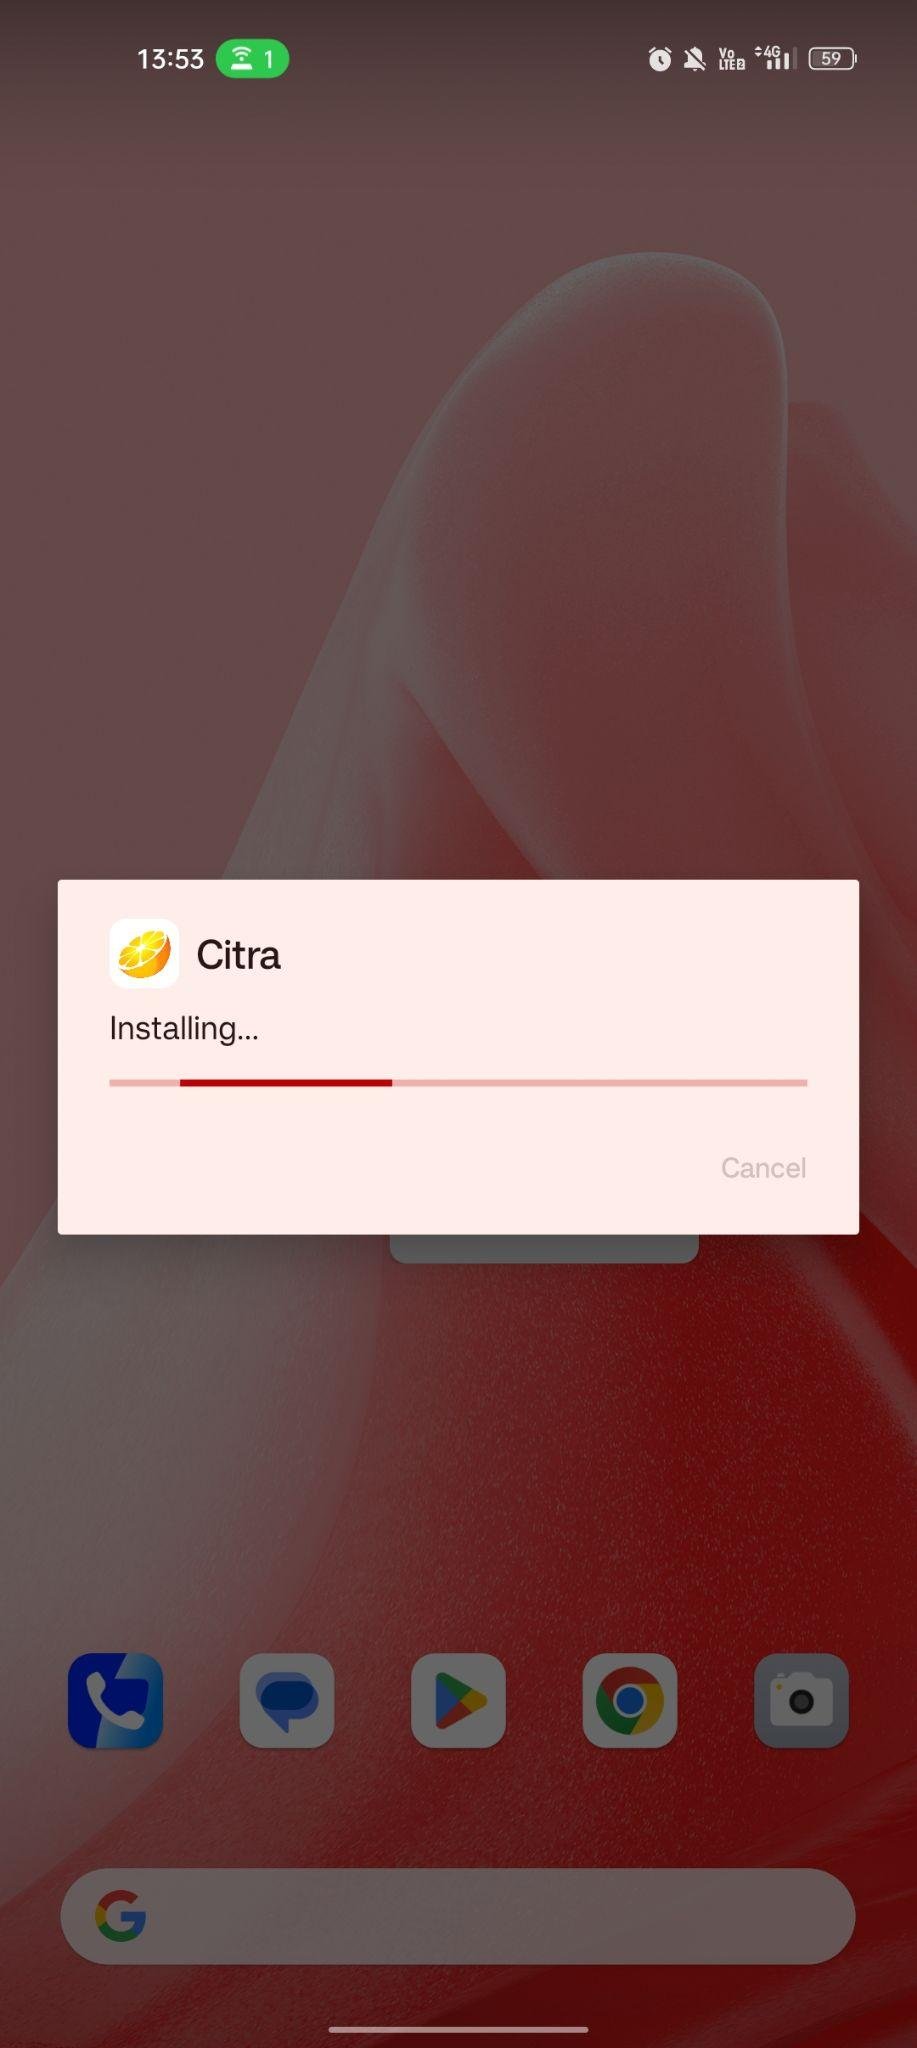 Citra Emulator apk installing